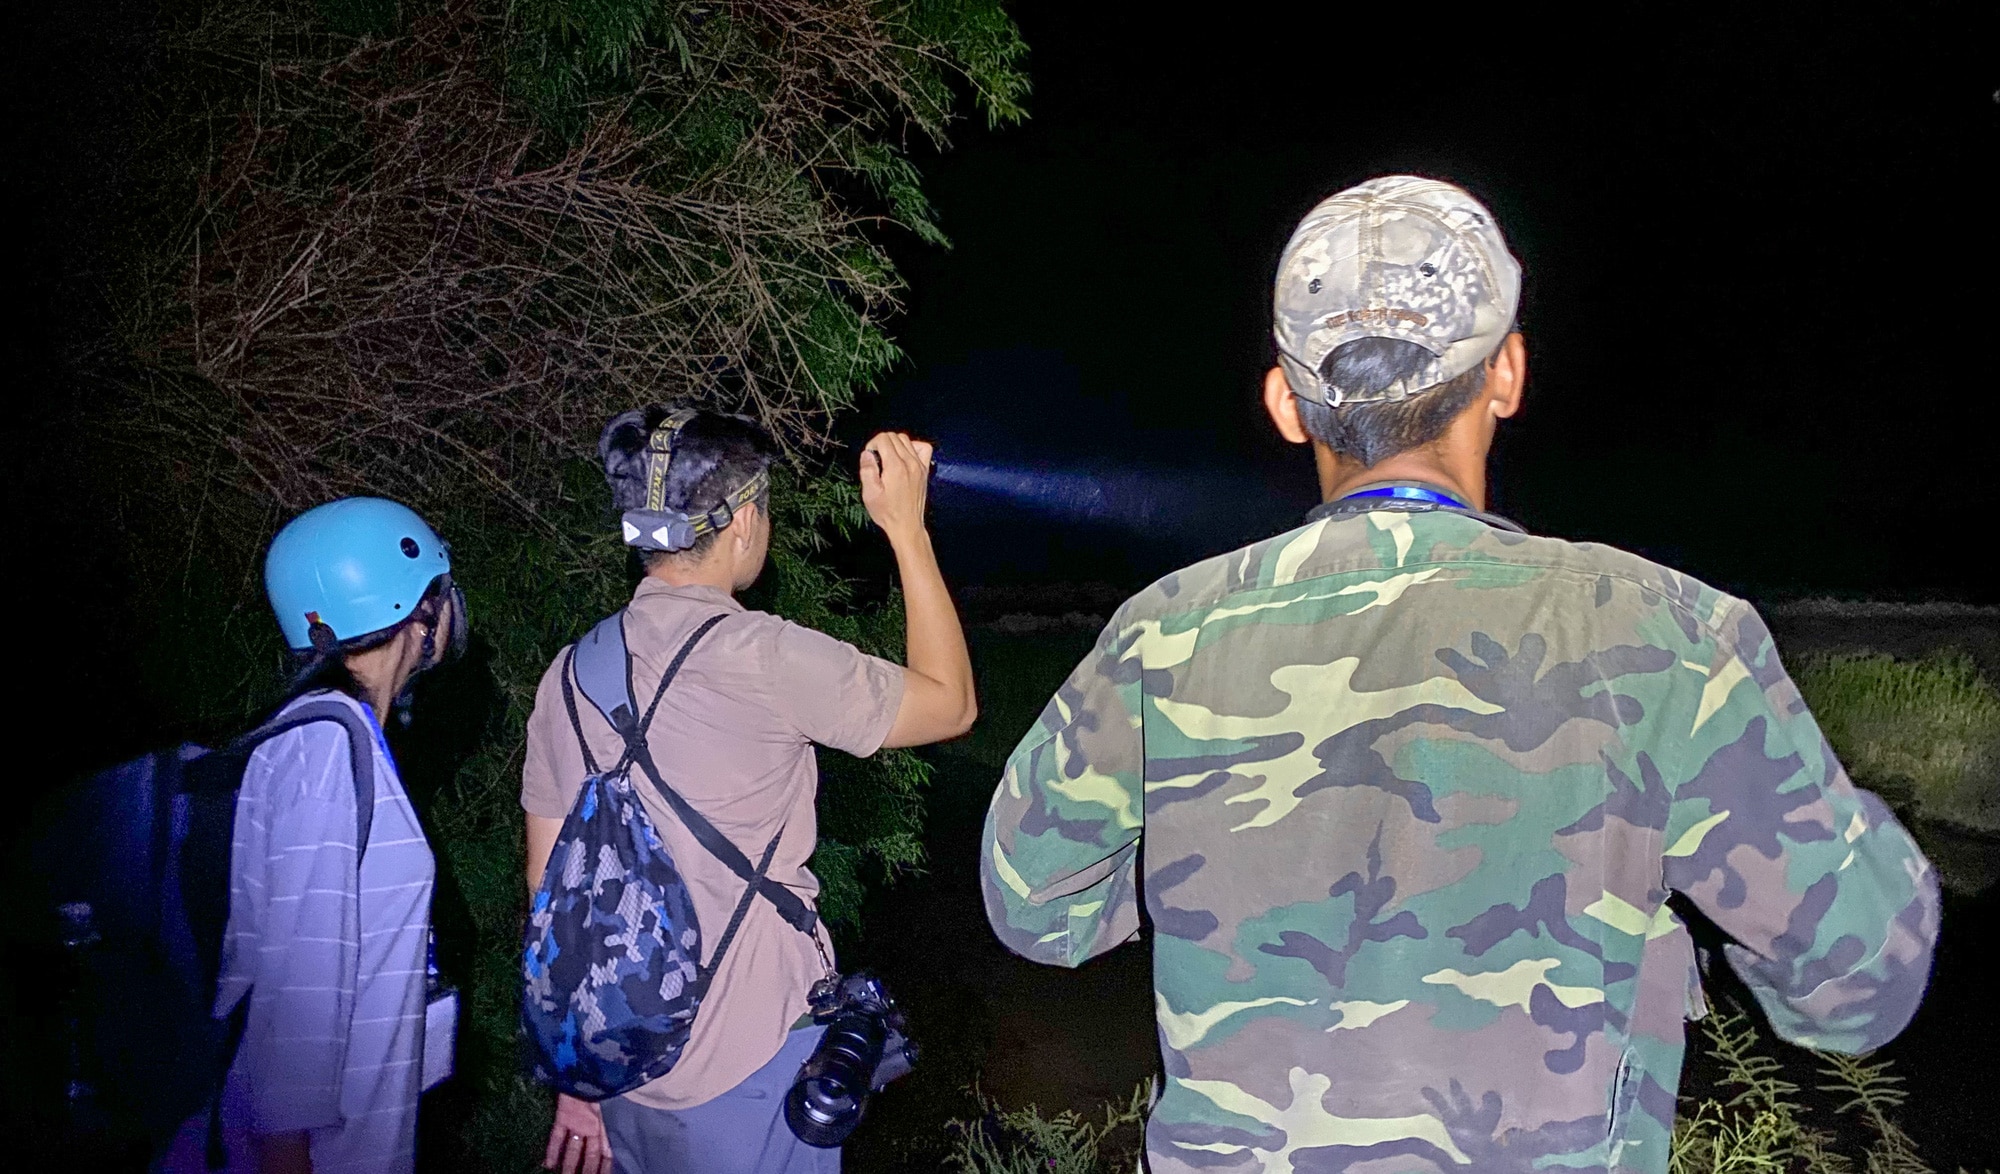 “Thánh chim” Bùi Thanh Trung (bìa phải) cùng đồng đội trẻ đi tìm chim cú lúc nửa đêm - Ảnh: H.T